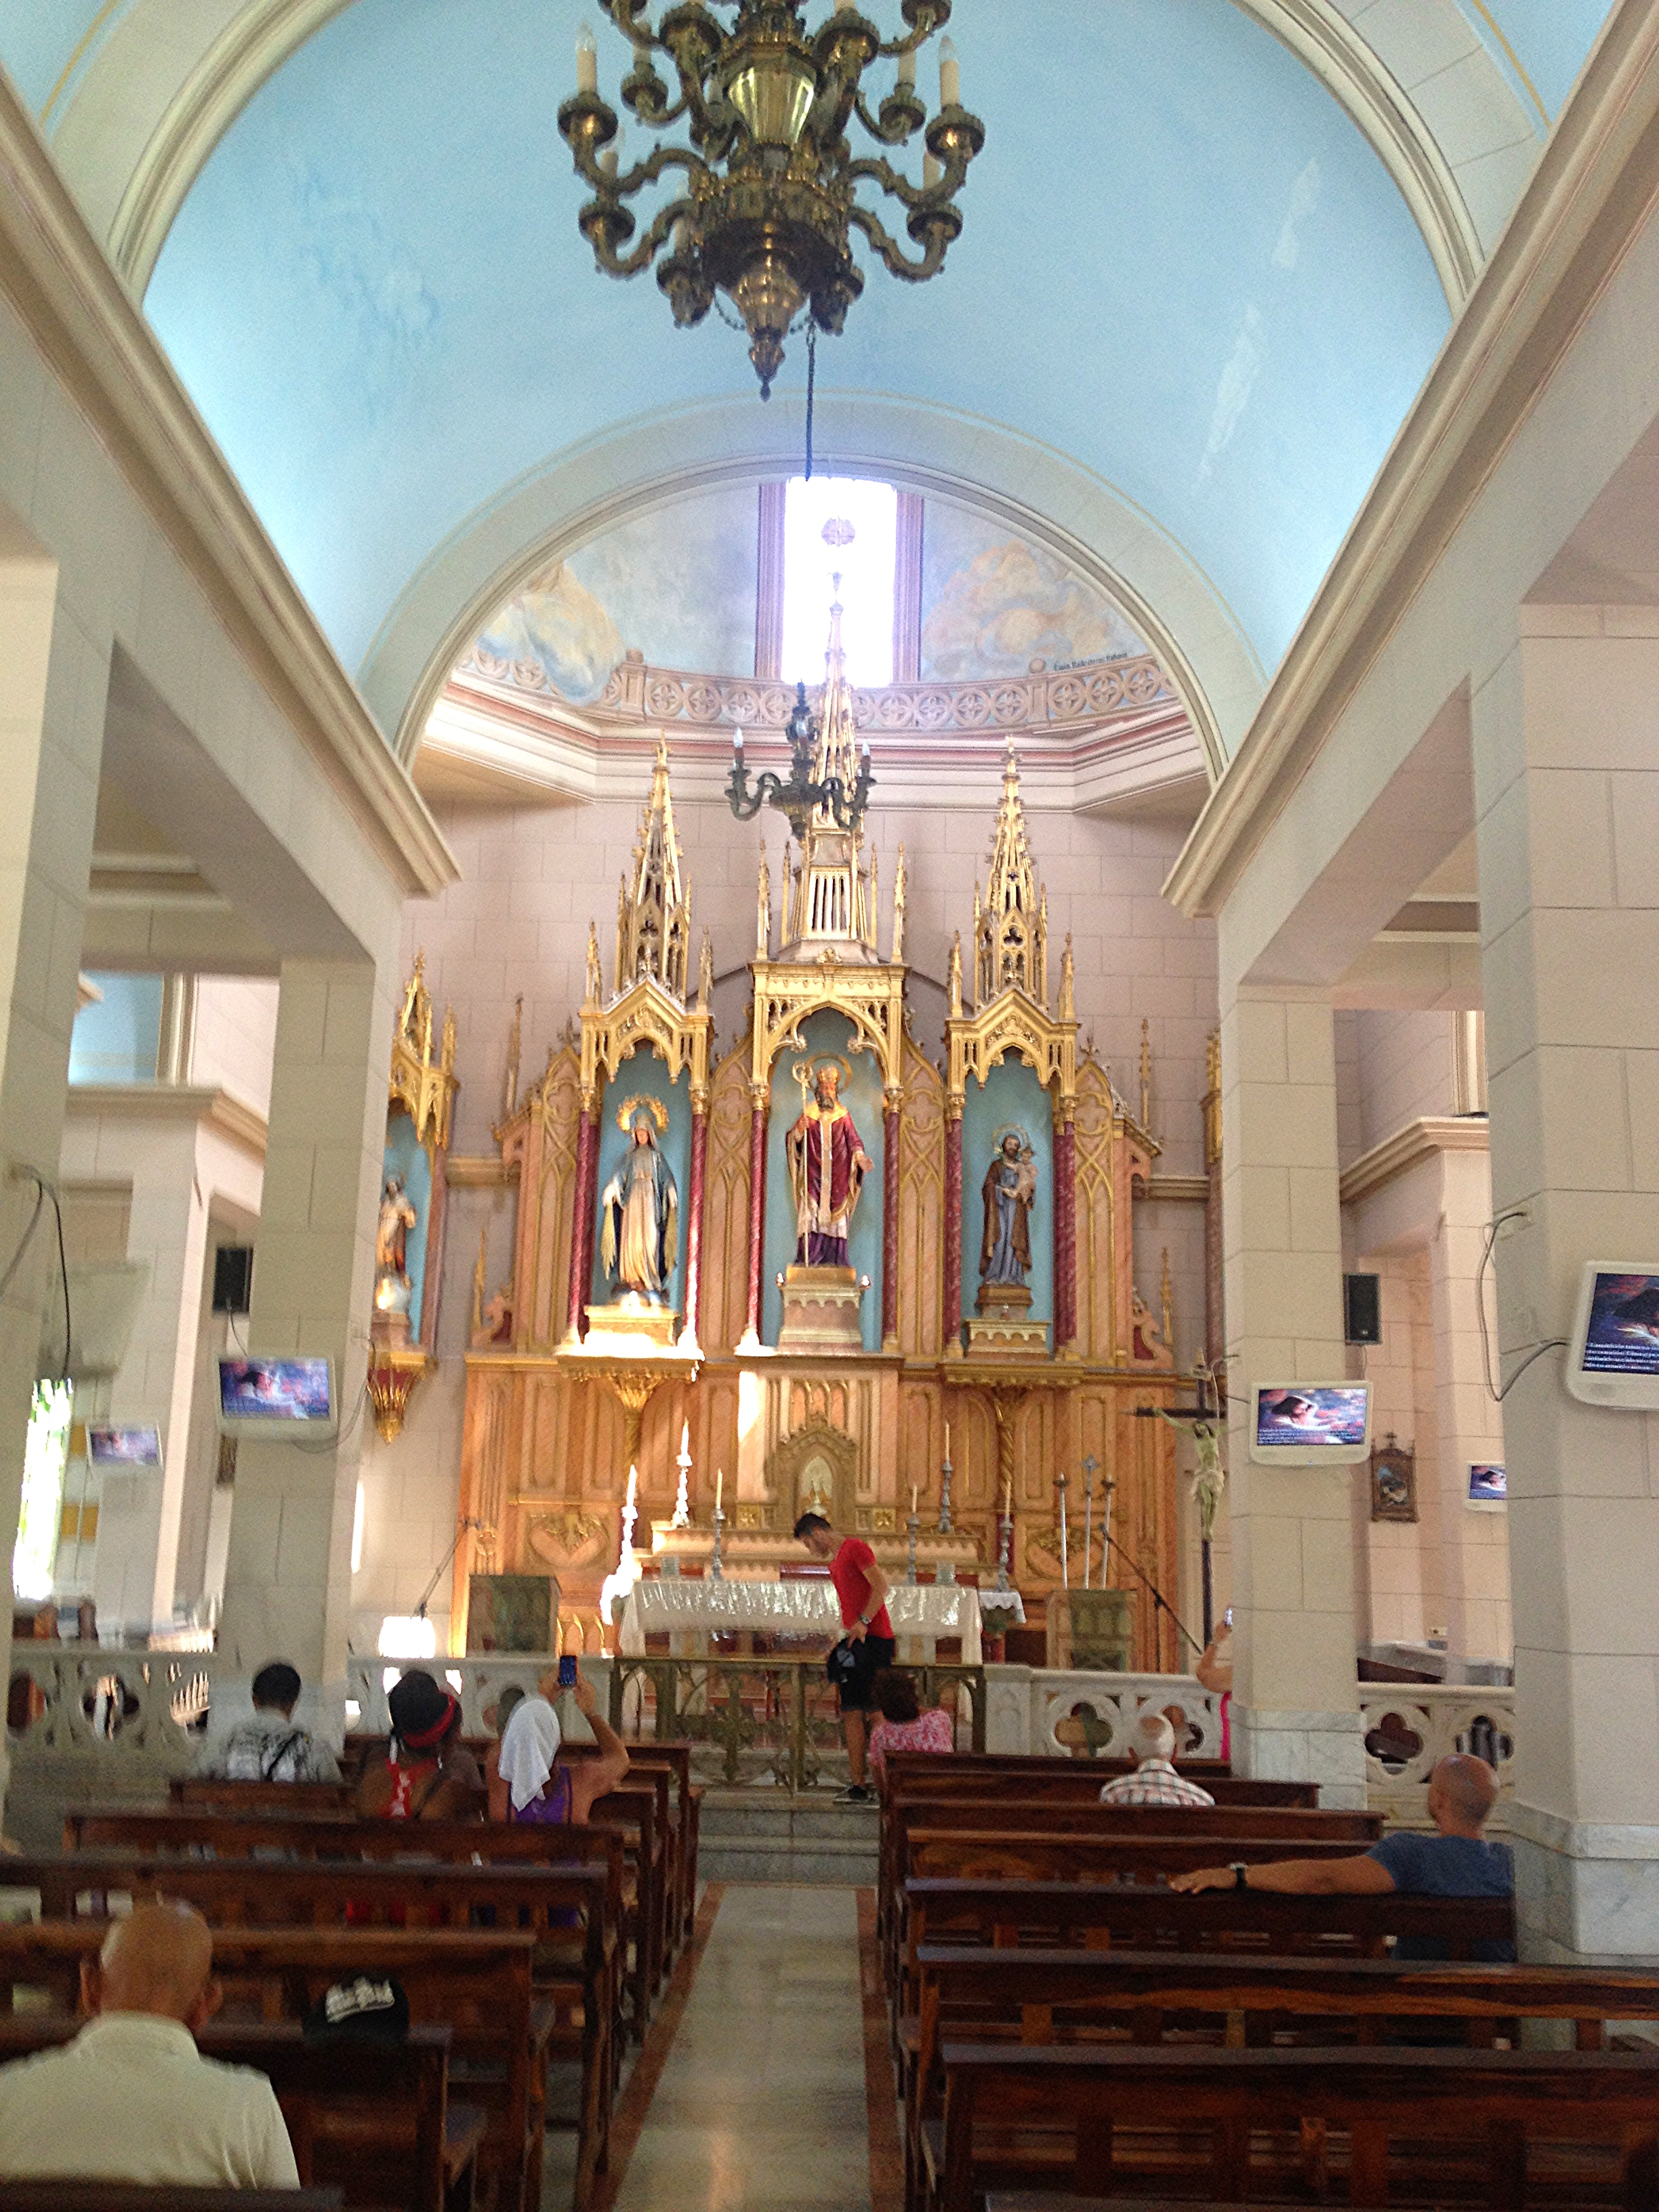  El Rincon de San Lazaro church located in El Rincon, Cuba. 